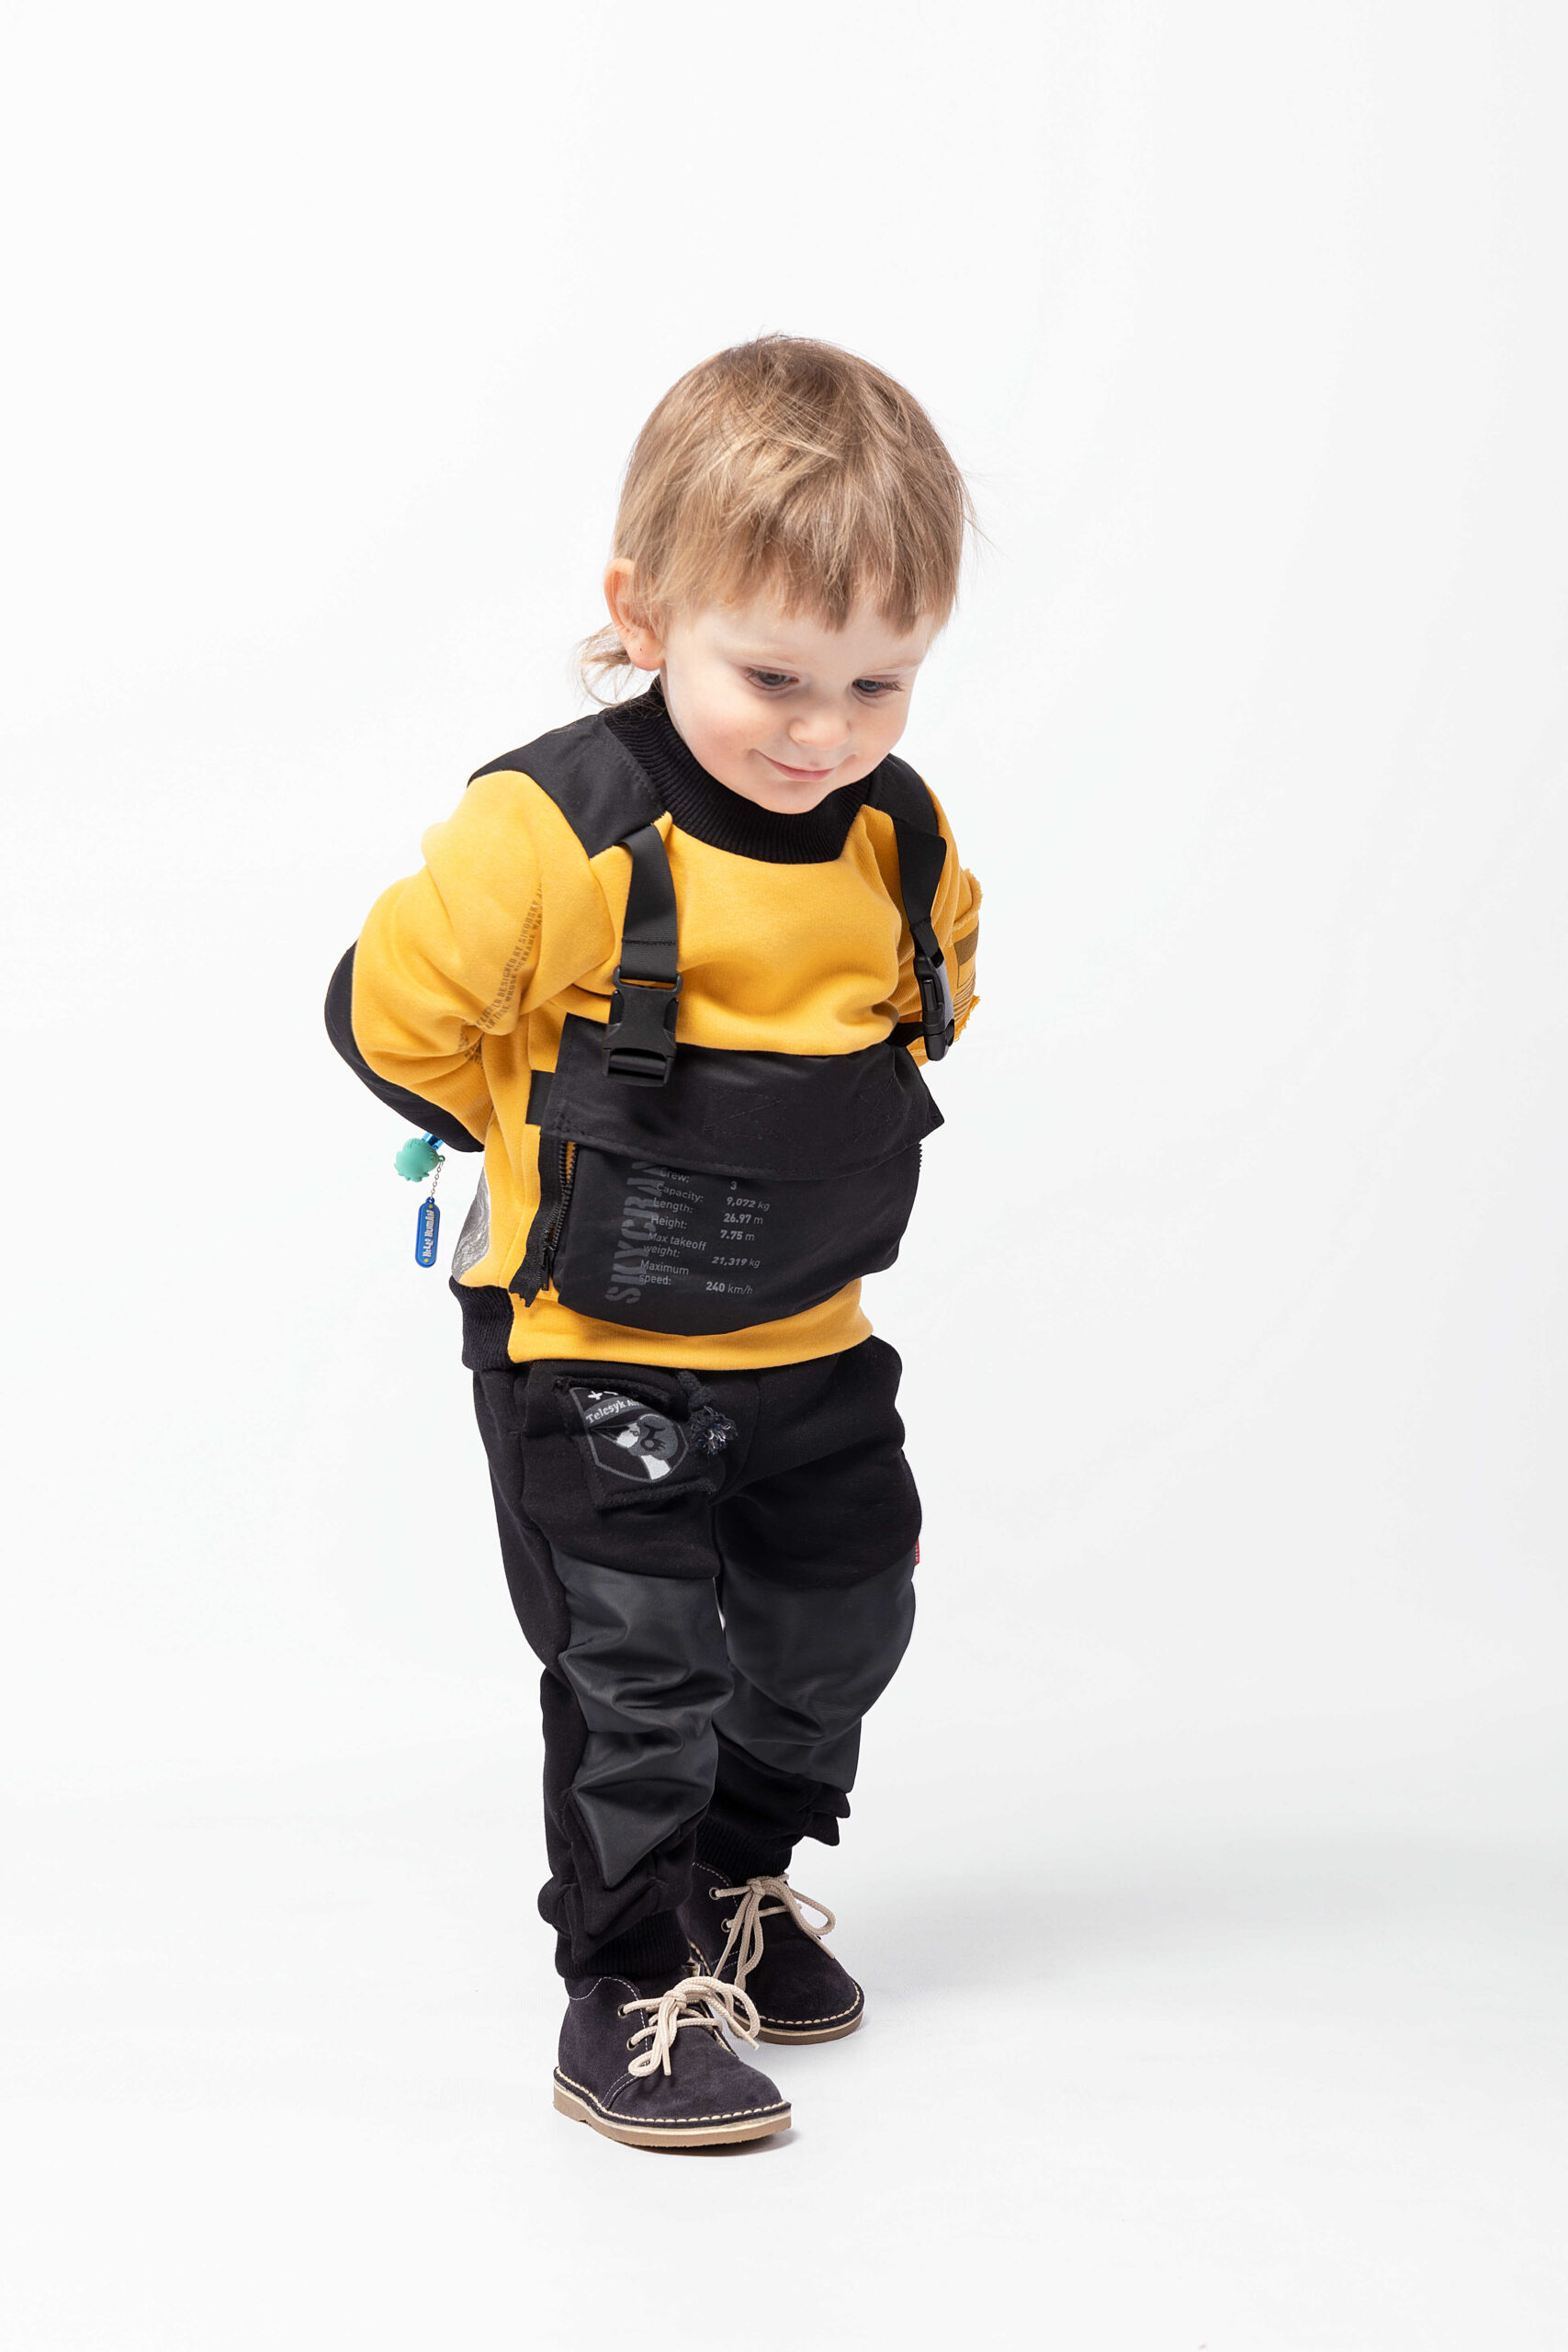 Дитячий Світшот Skycrane. Колір жовтий. 
Технологія нанесення зображень: вишивка, шеврони.